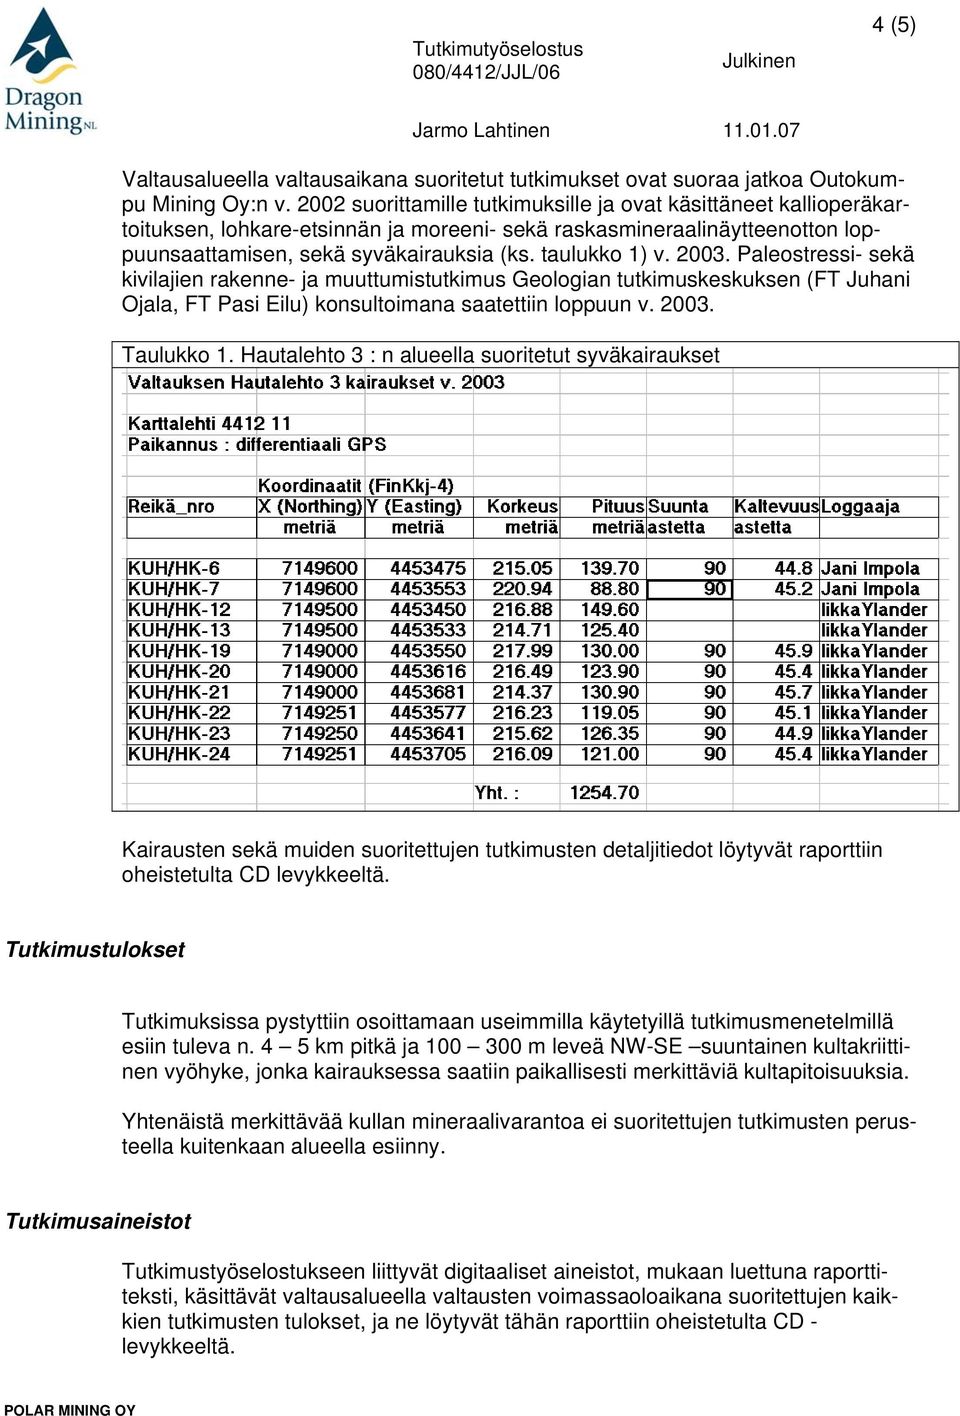 2003. Paleostressi- sekä kivilajien rakenne- ja muuttumistutkimus Geologian tutkimuskeskuksen (FT Juhani Ojala, FT Pasi Eilu) konsultoimana saatettiin loppuun v. 2003. Taulukko 1.